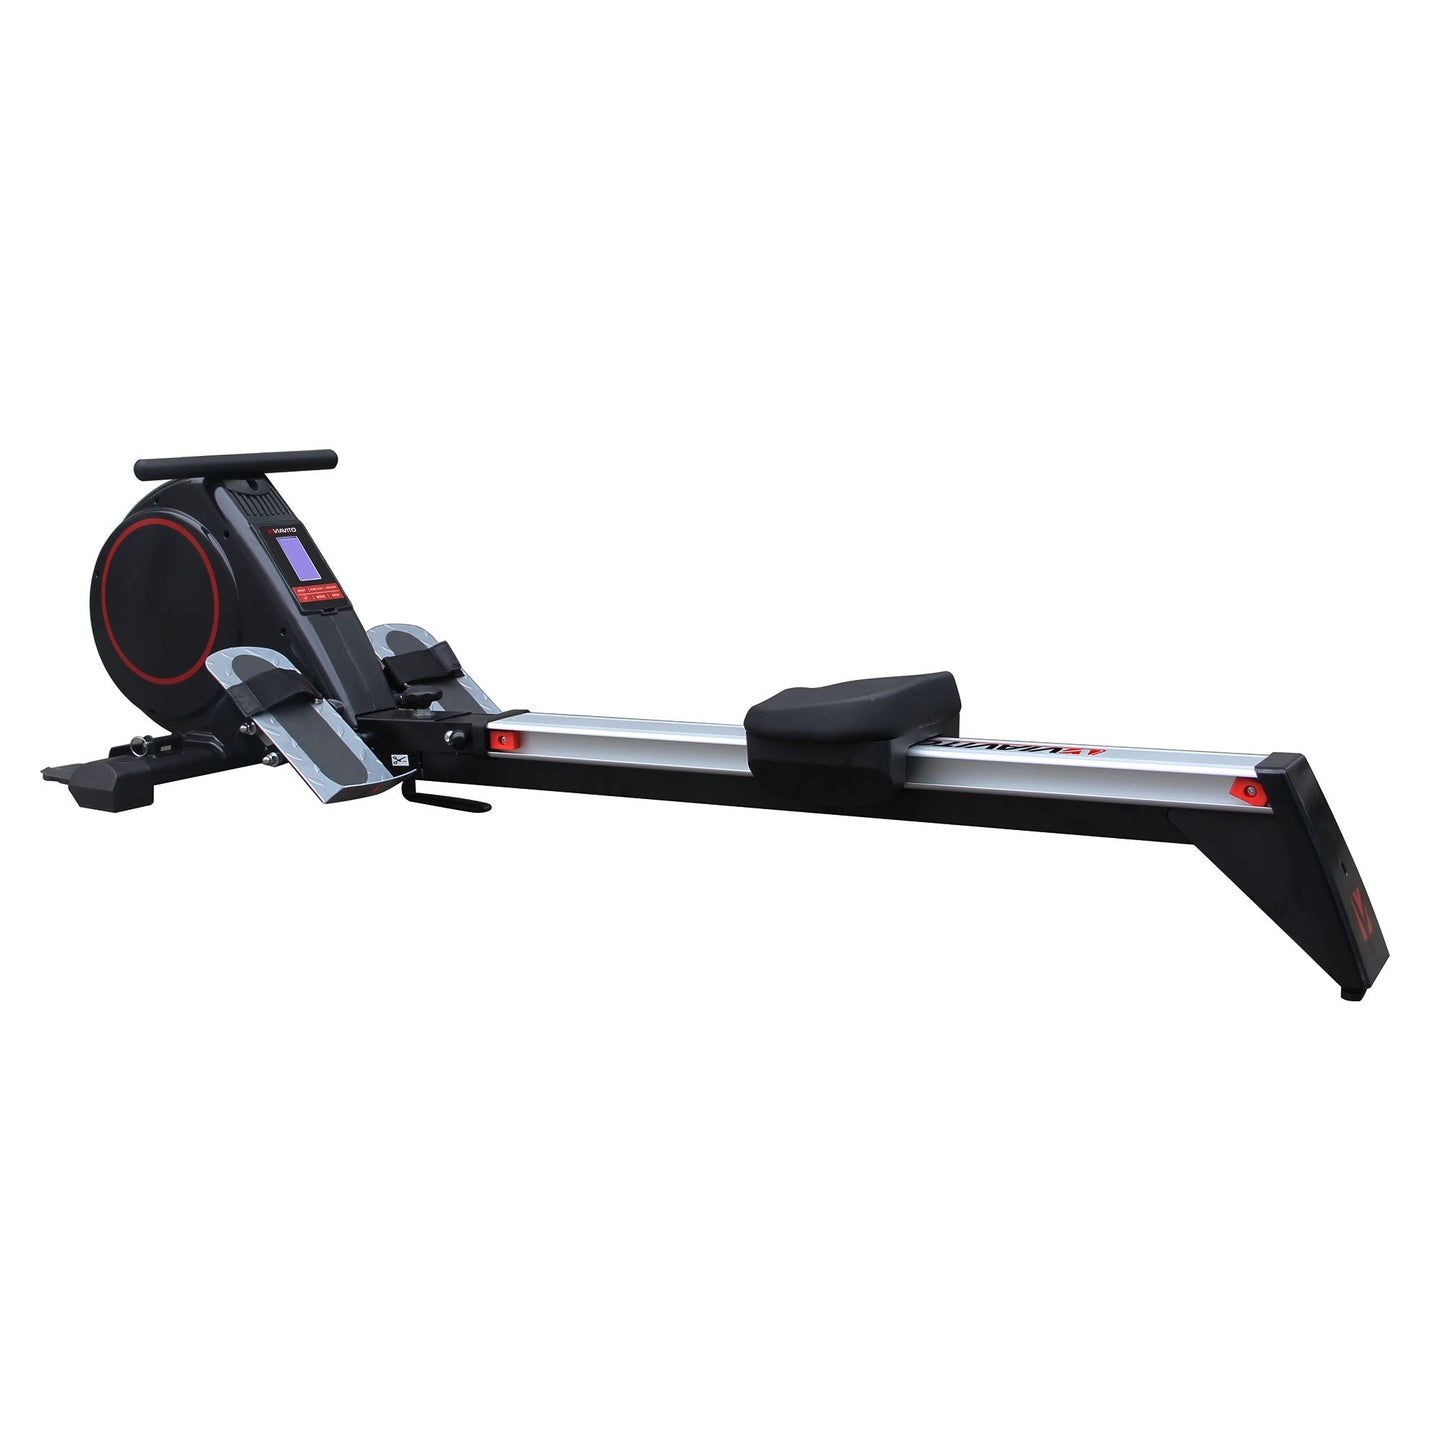 |Viavito Rokai Folding Rowing Machine|